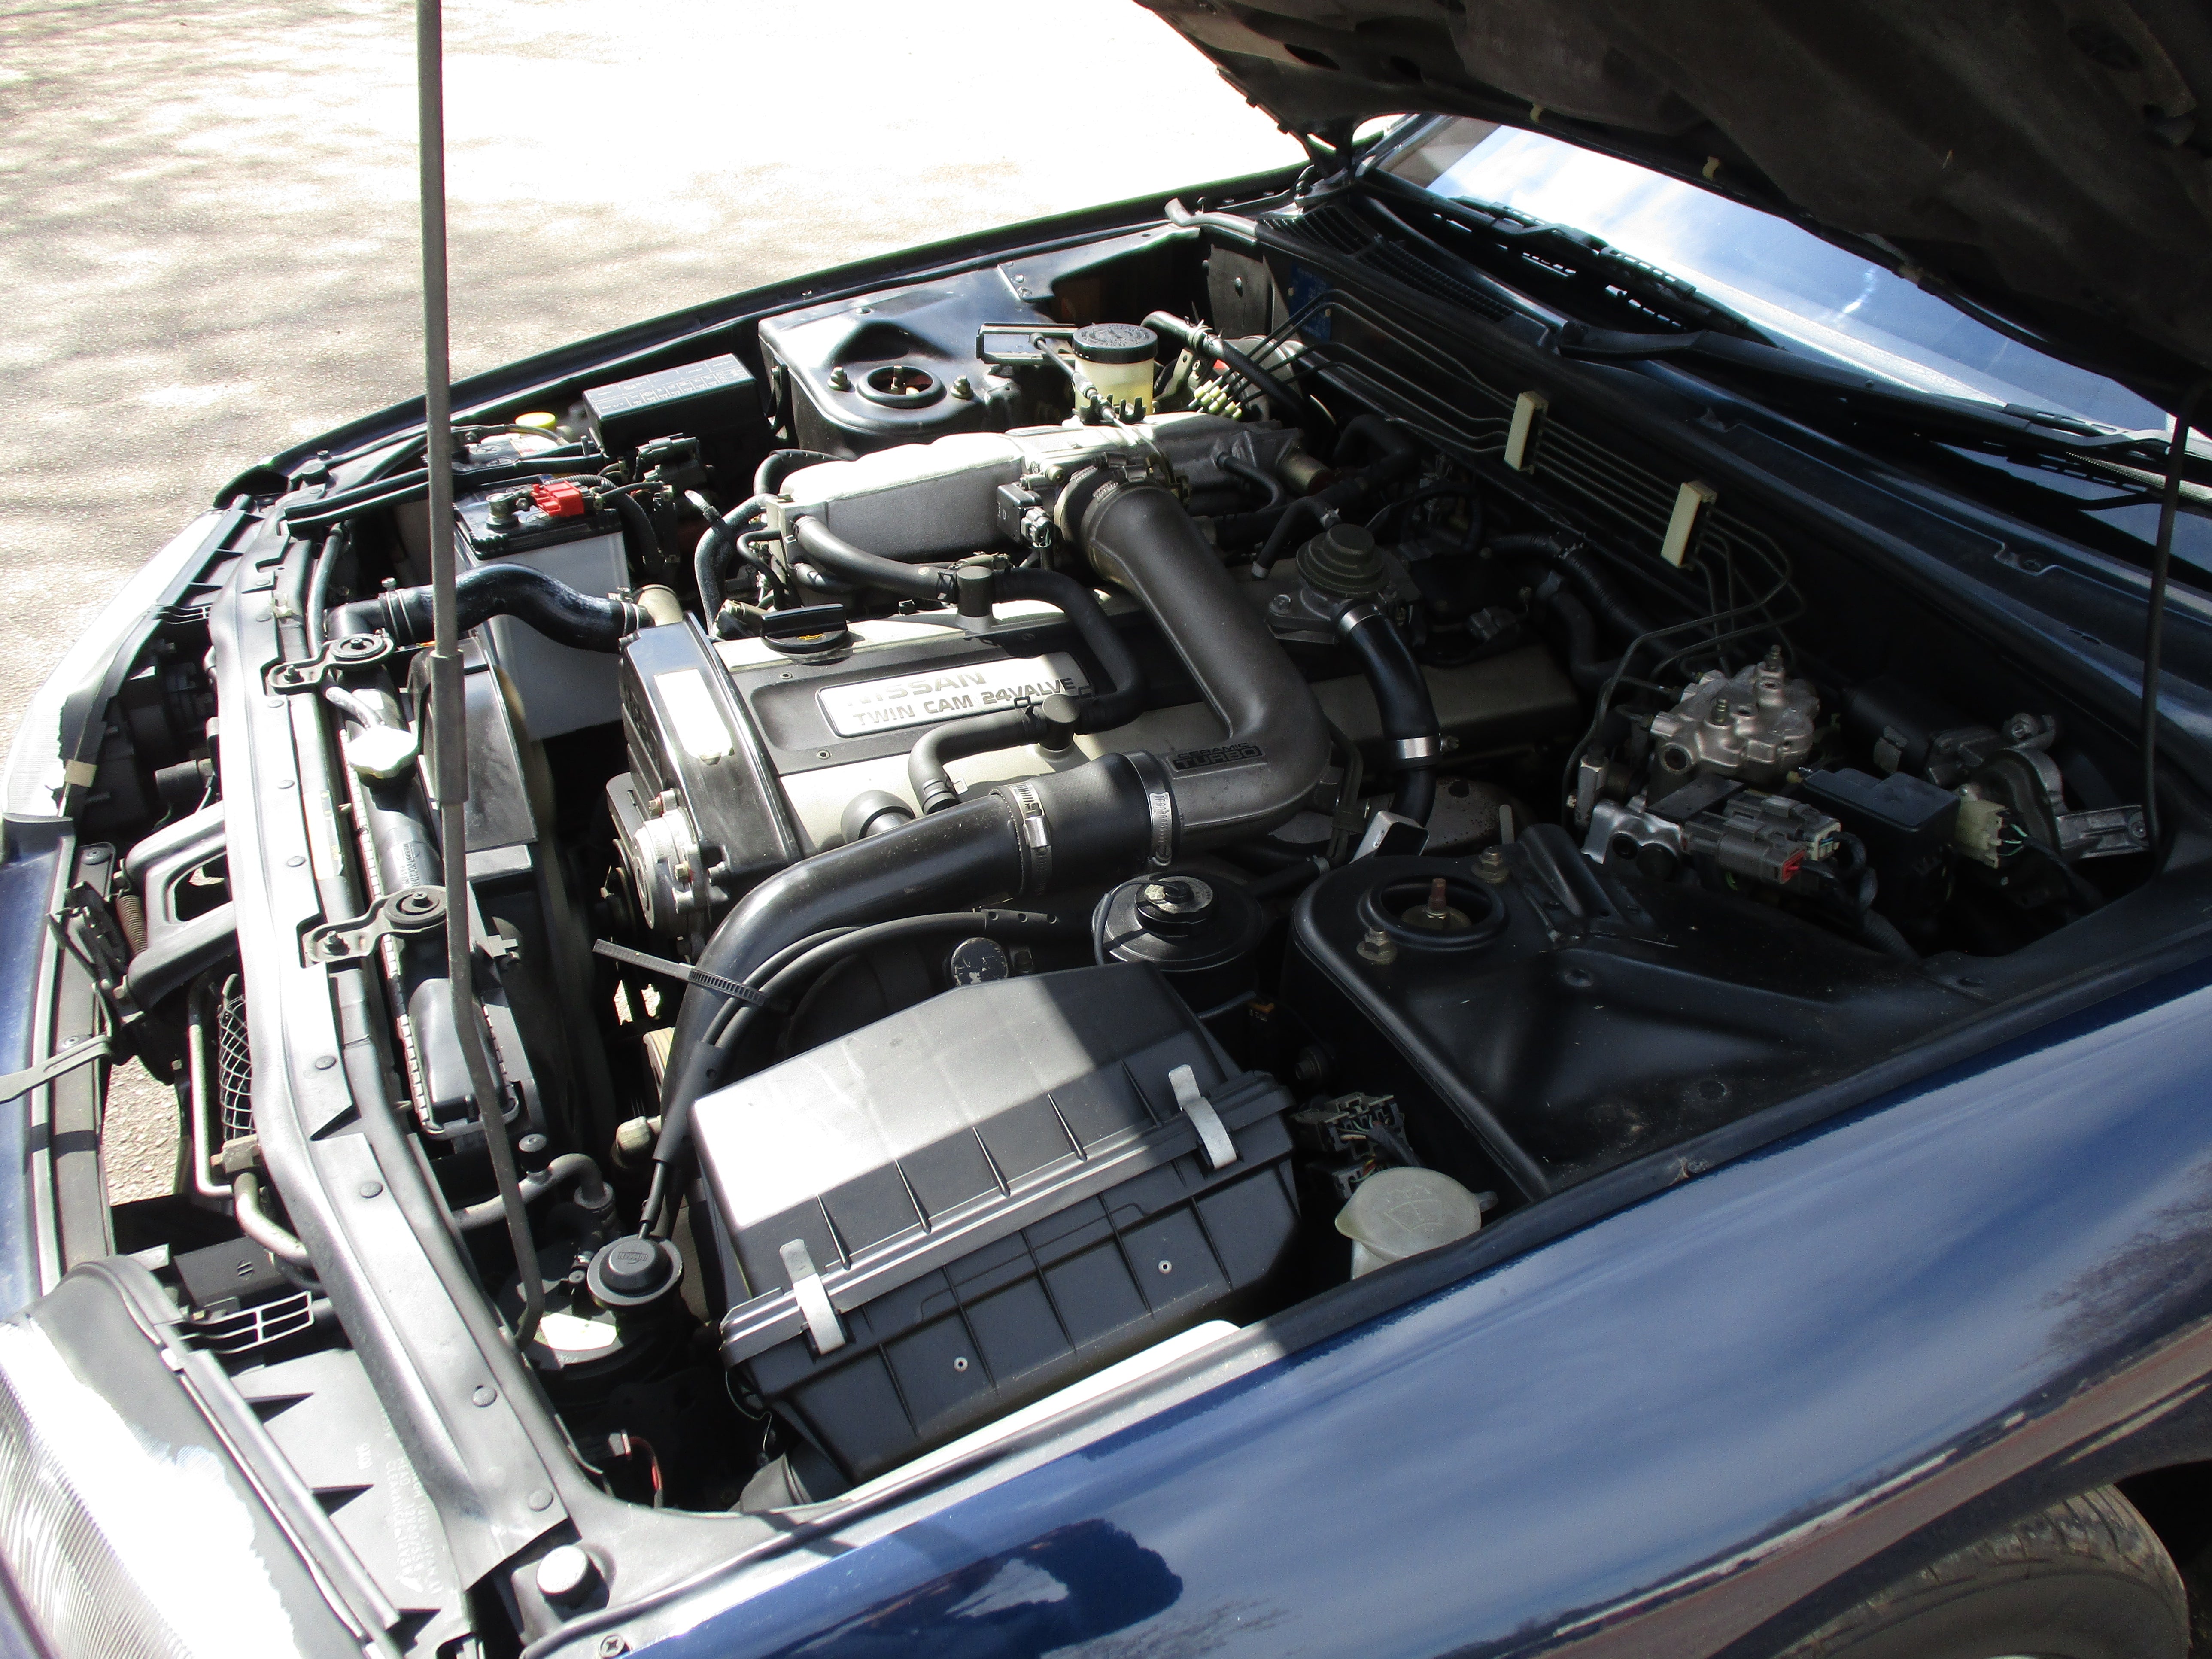 JDM 89 Nissan Skyline R32 GTS-4 4wd Turbo Sedan Super Clean